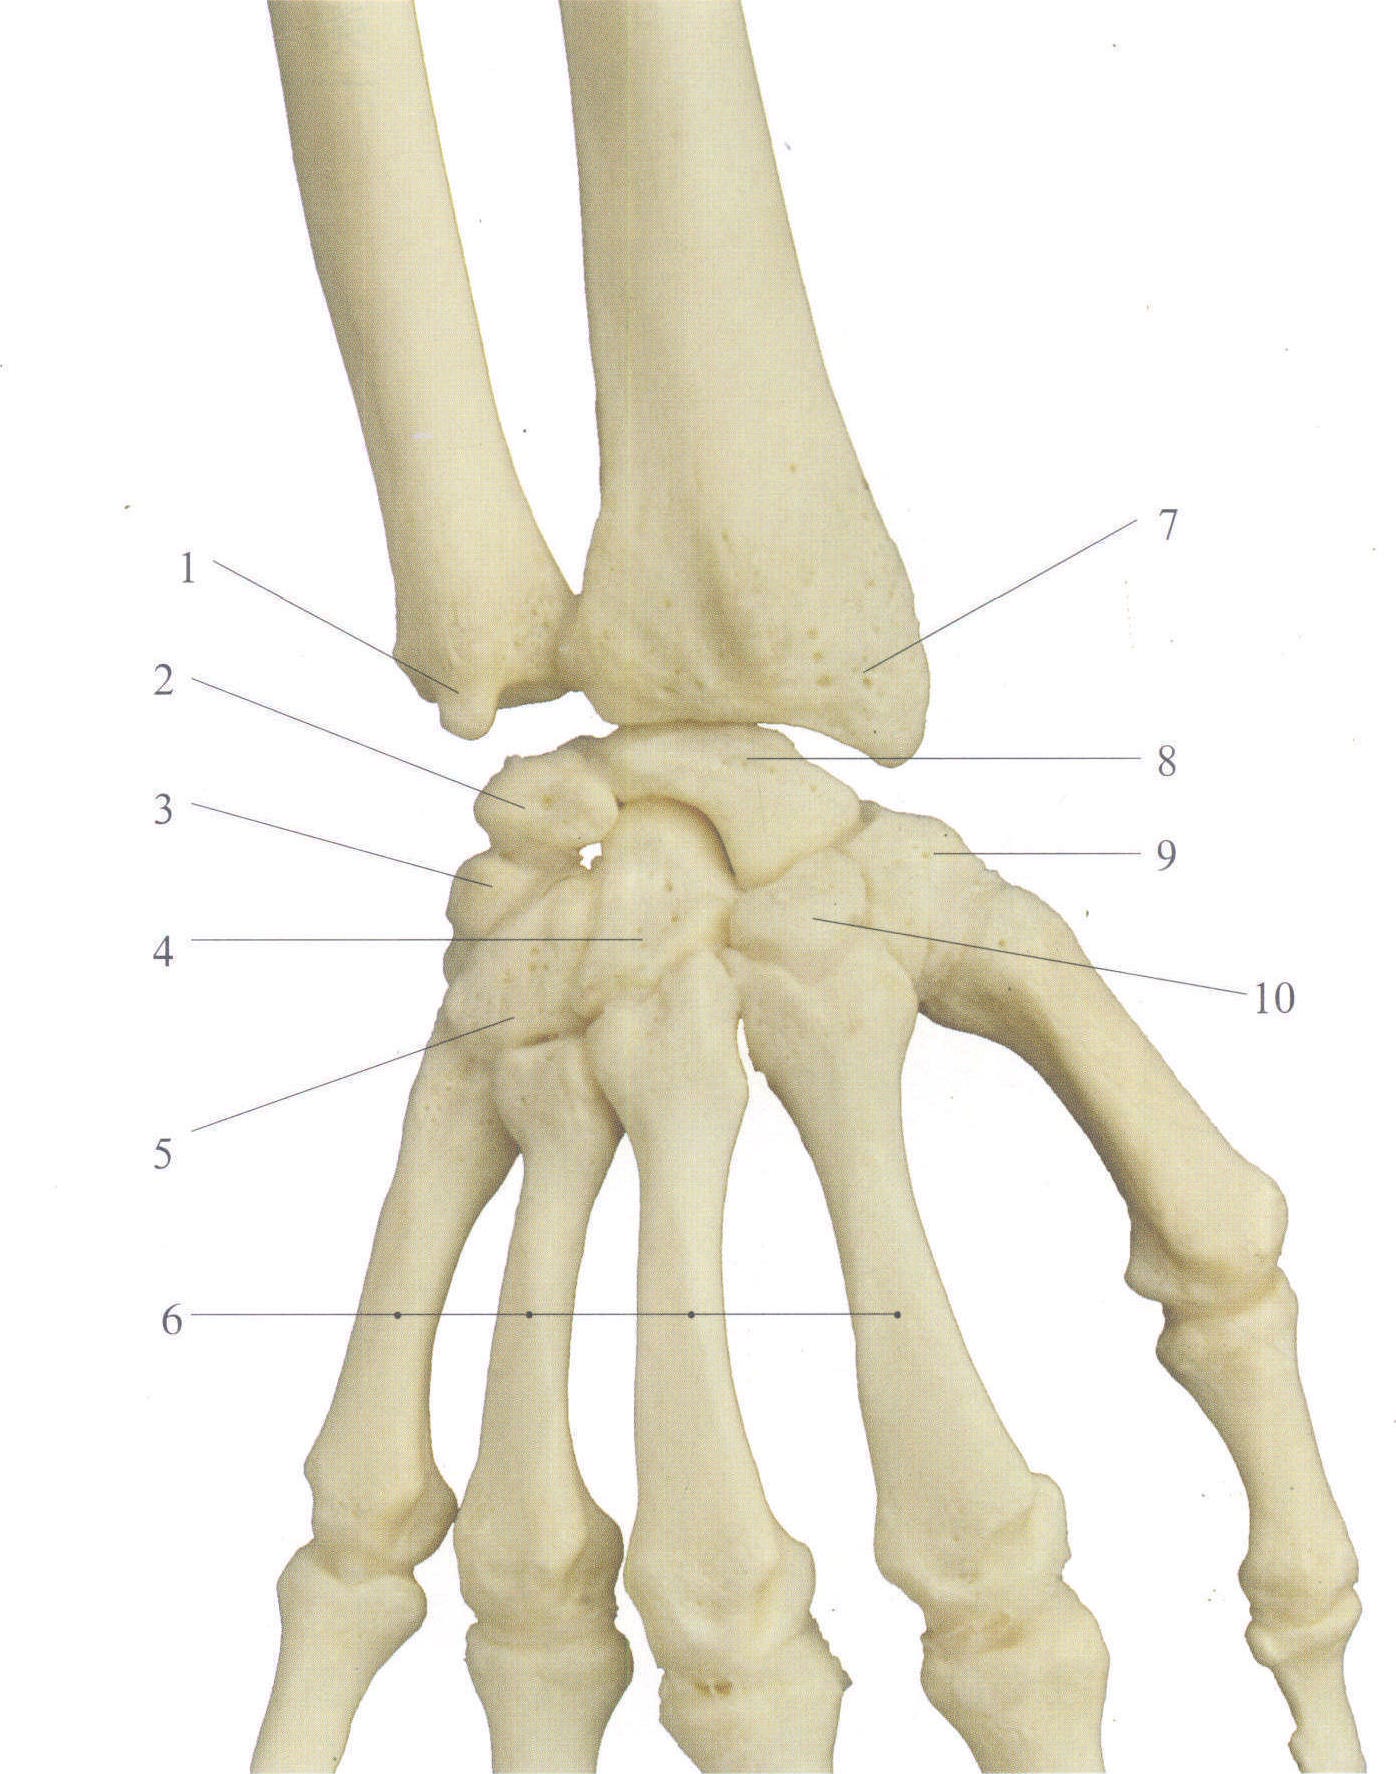 尺腕关节解剖图片